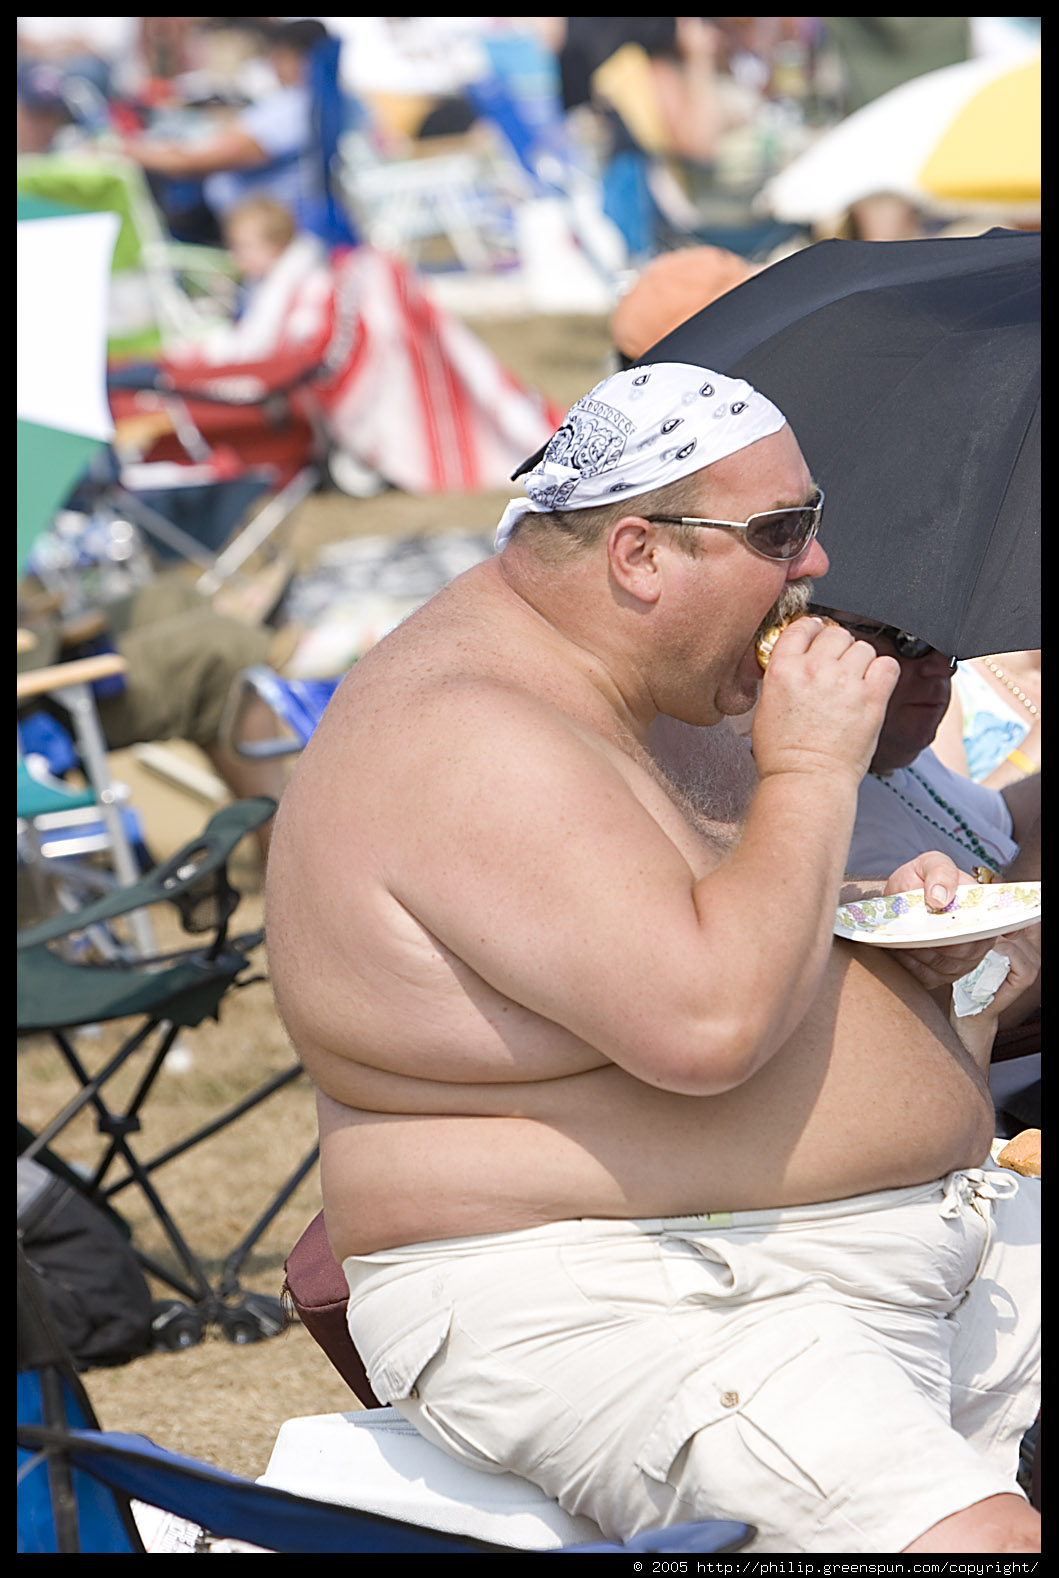 [fat-shirtless-guy-eating-cheeseburger-2.4.jpg]